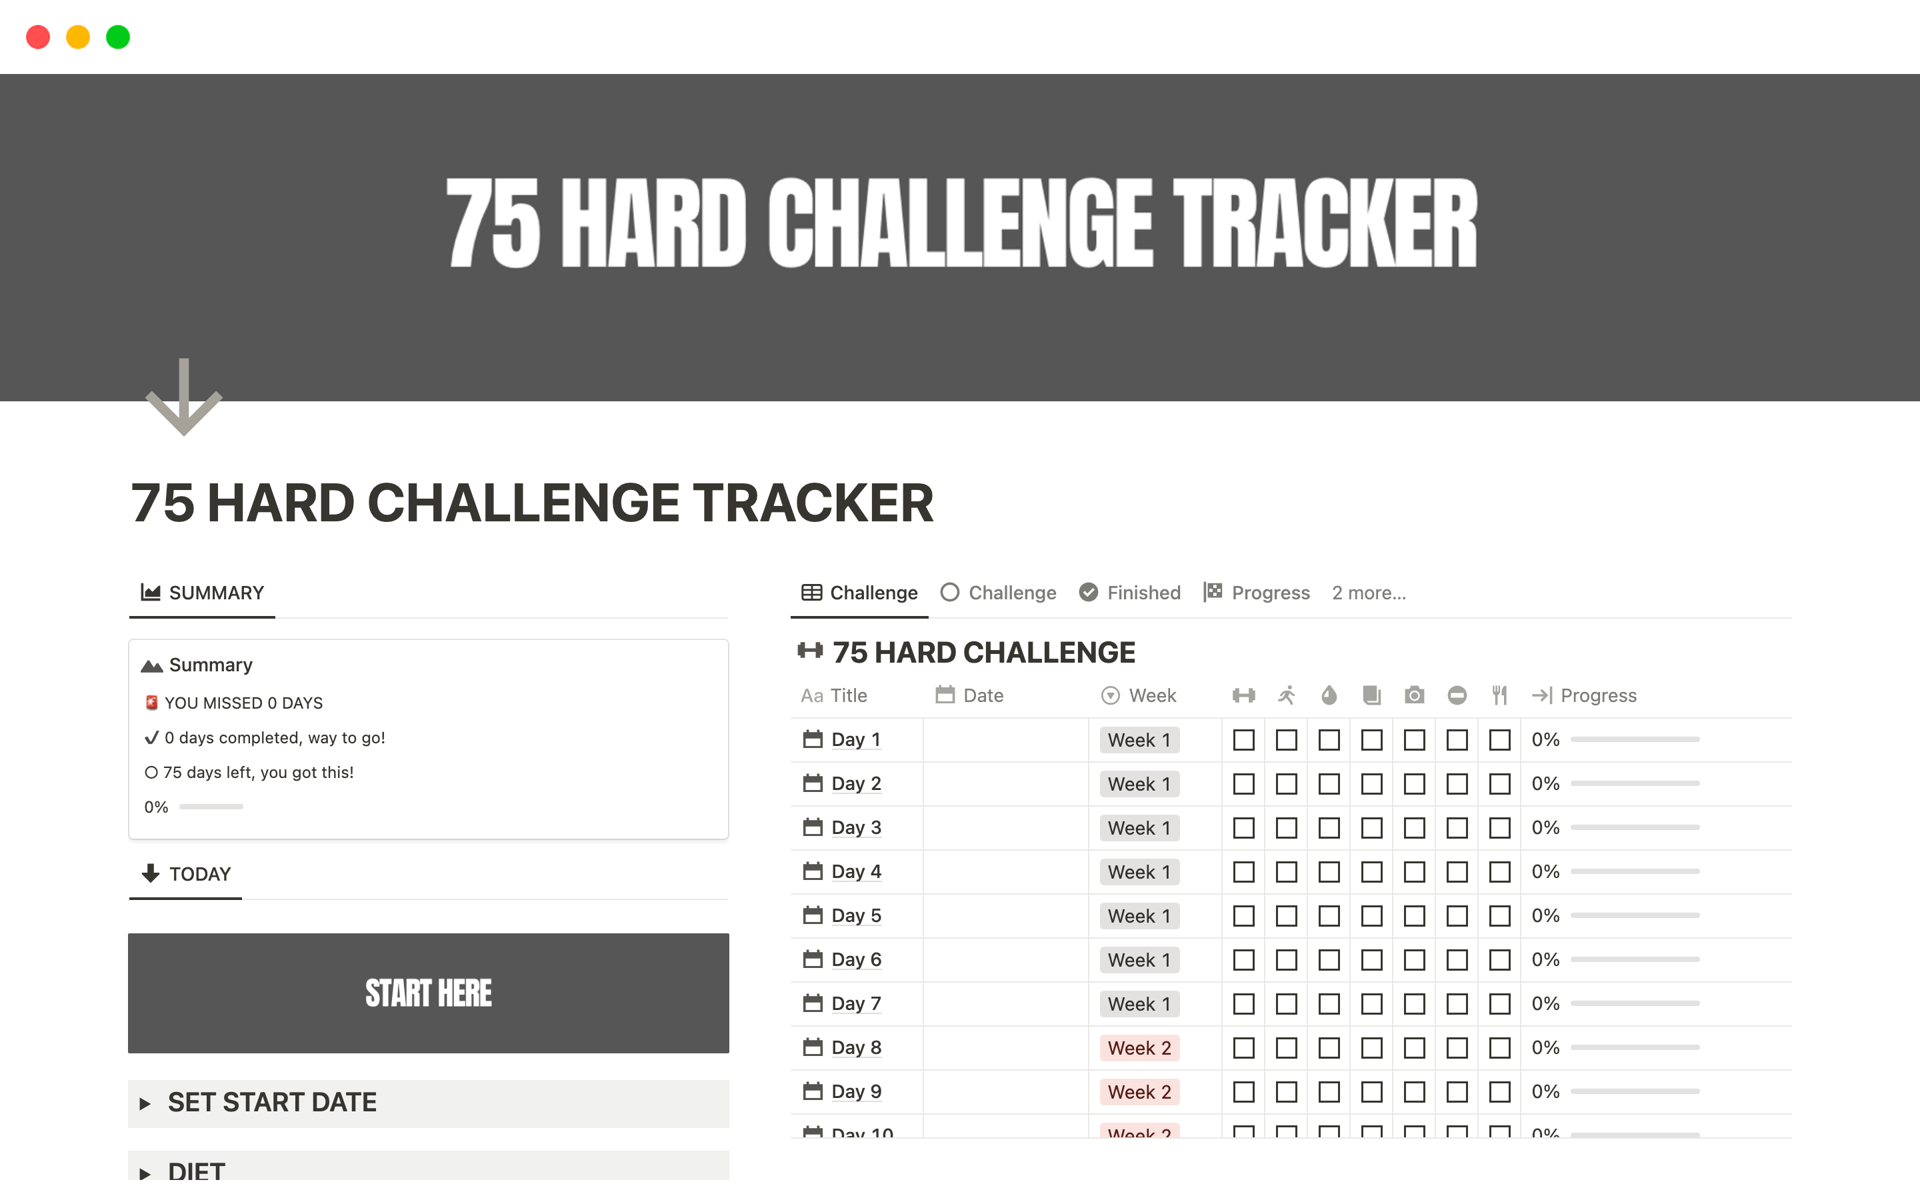 En förhandsgranskning av mallen för 75 HARD CHALLENGE TRACKER